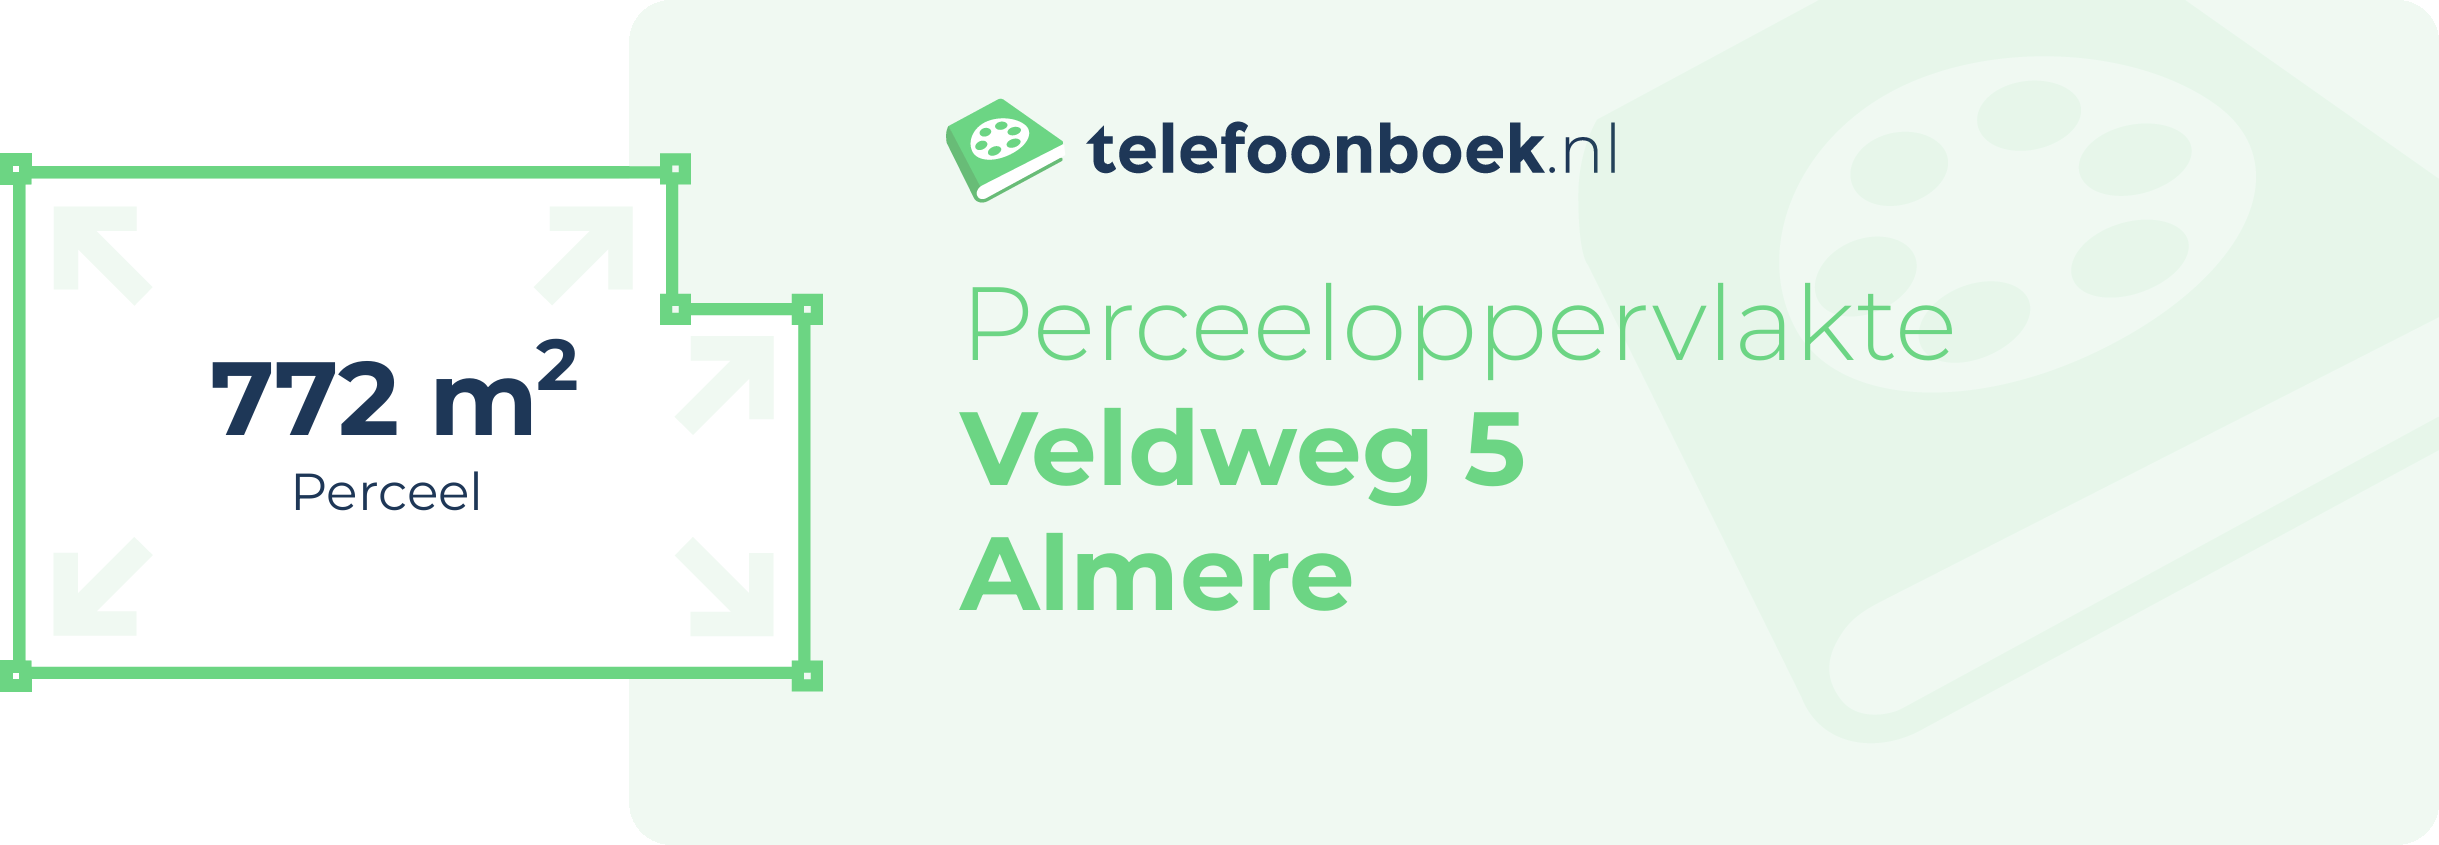 Perceeloppervlakte Veldweg 5 Almere